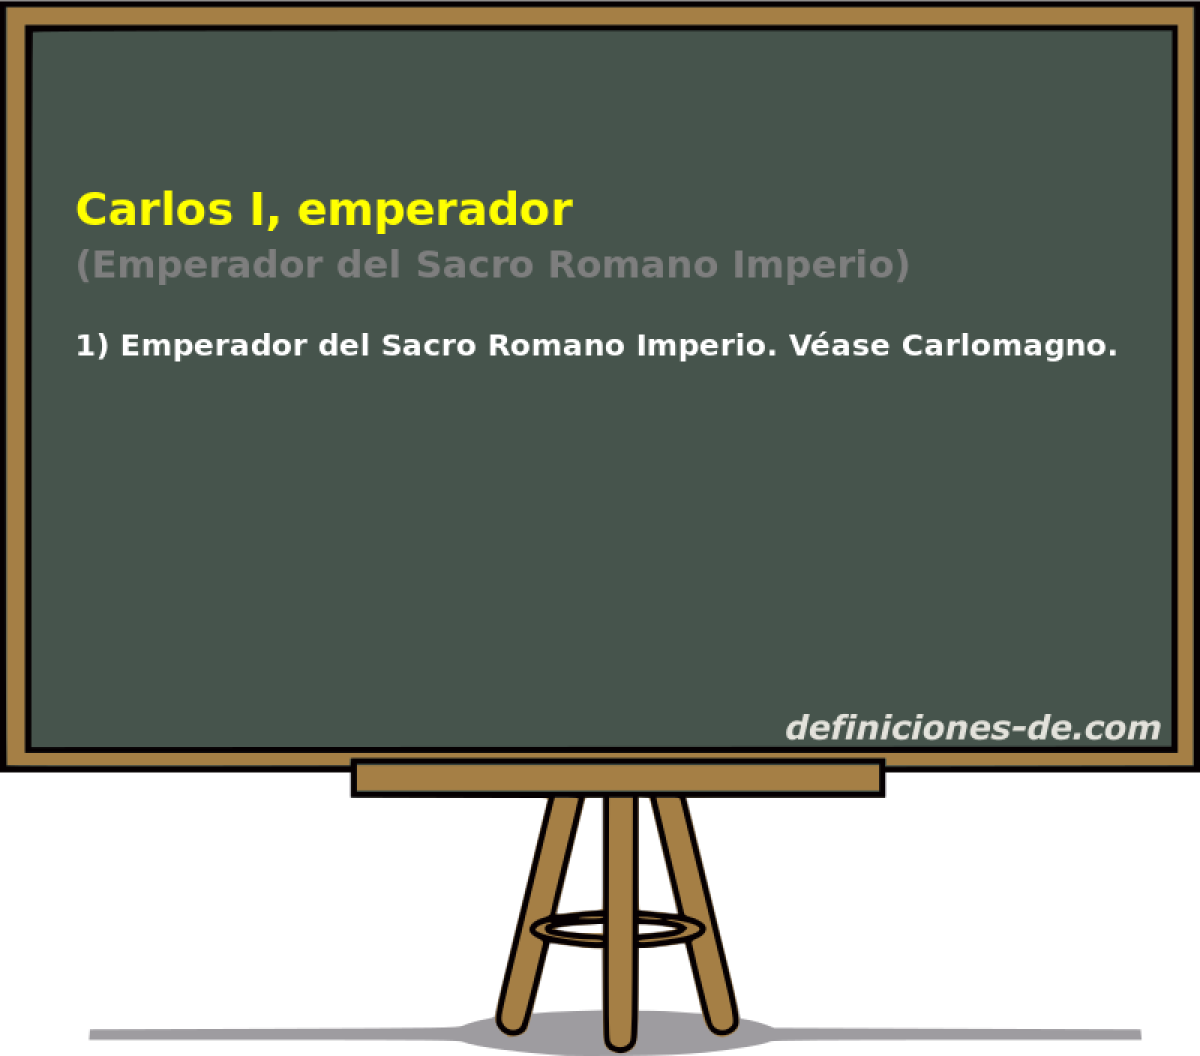 Carlos I, emperador (Emperador del Sacro Romano Imperio)